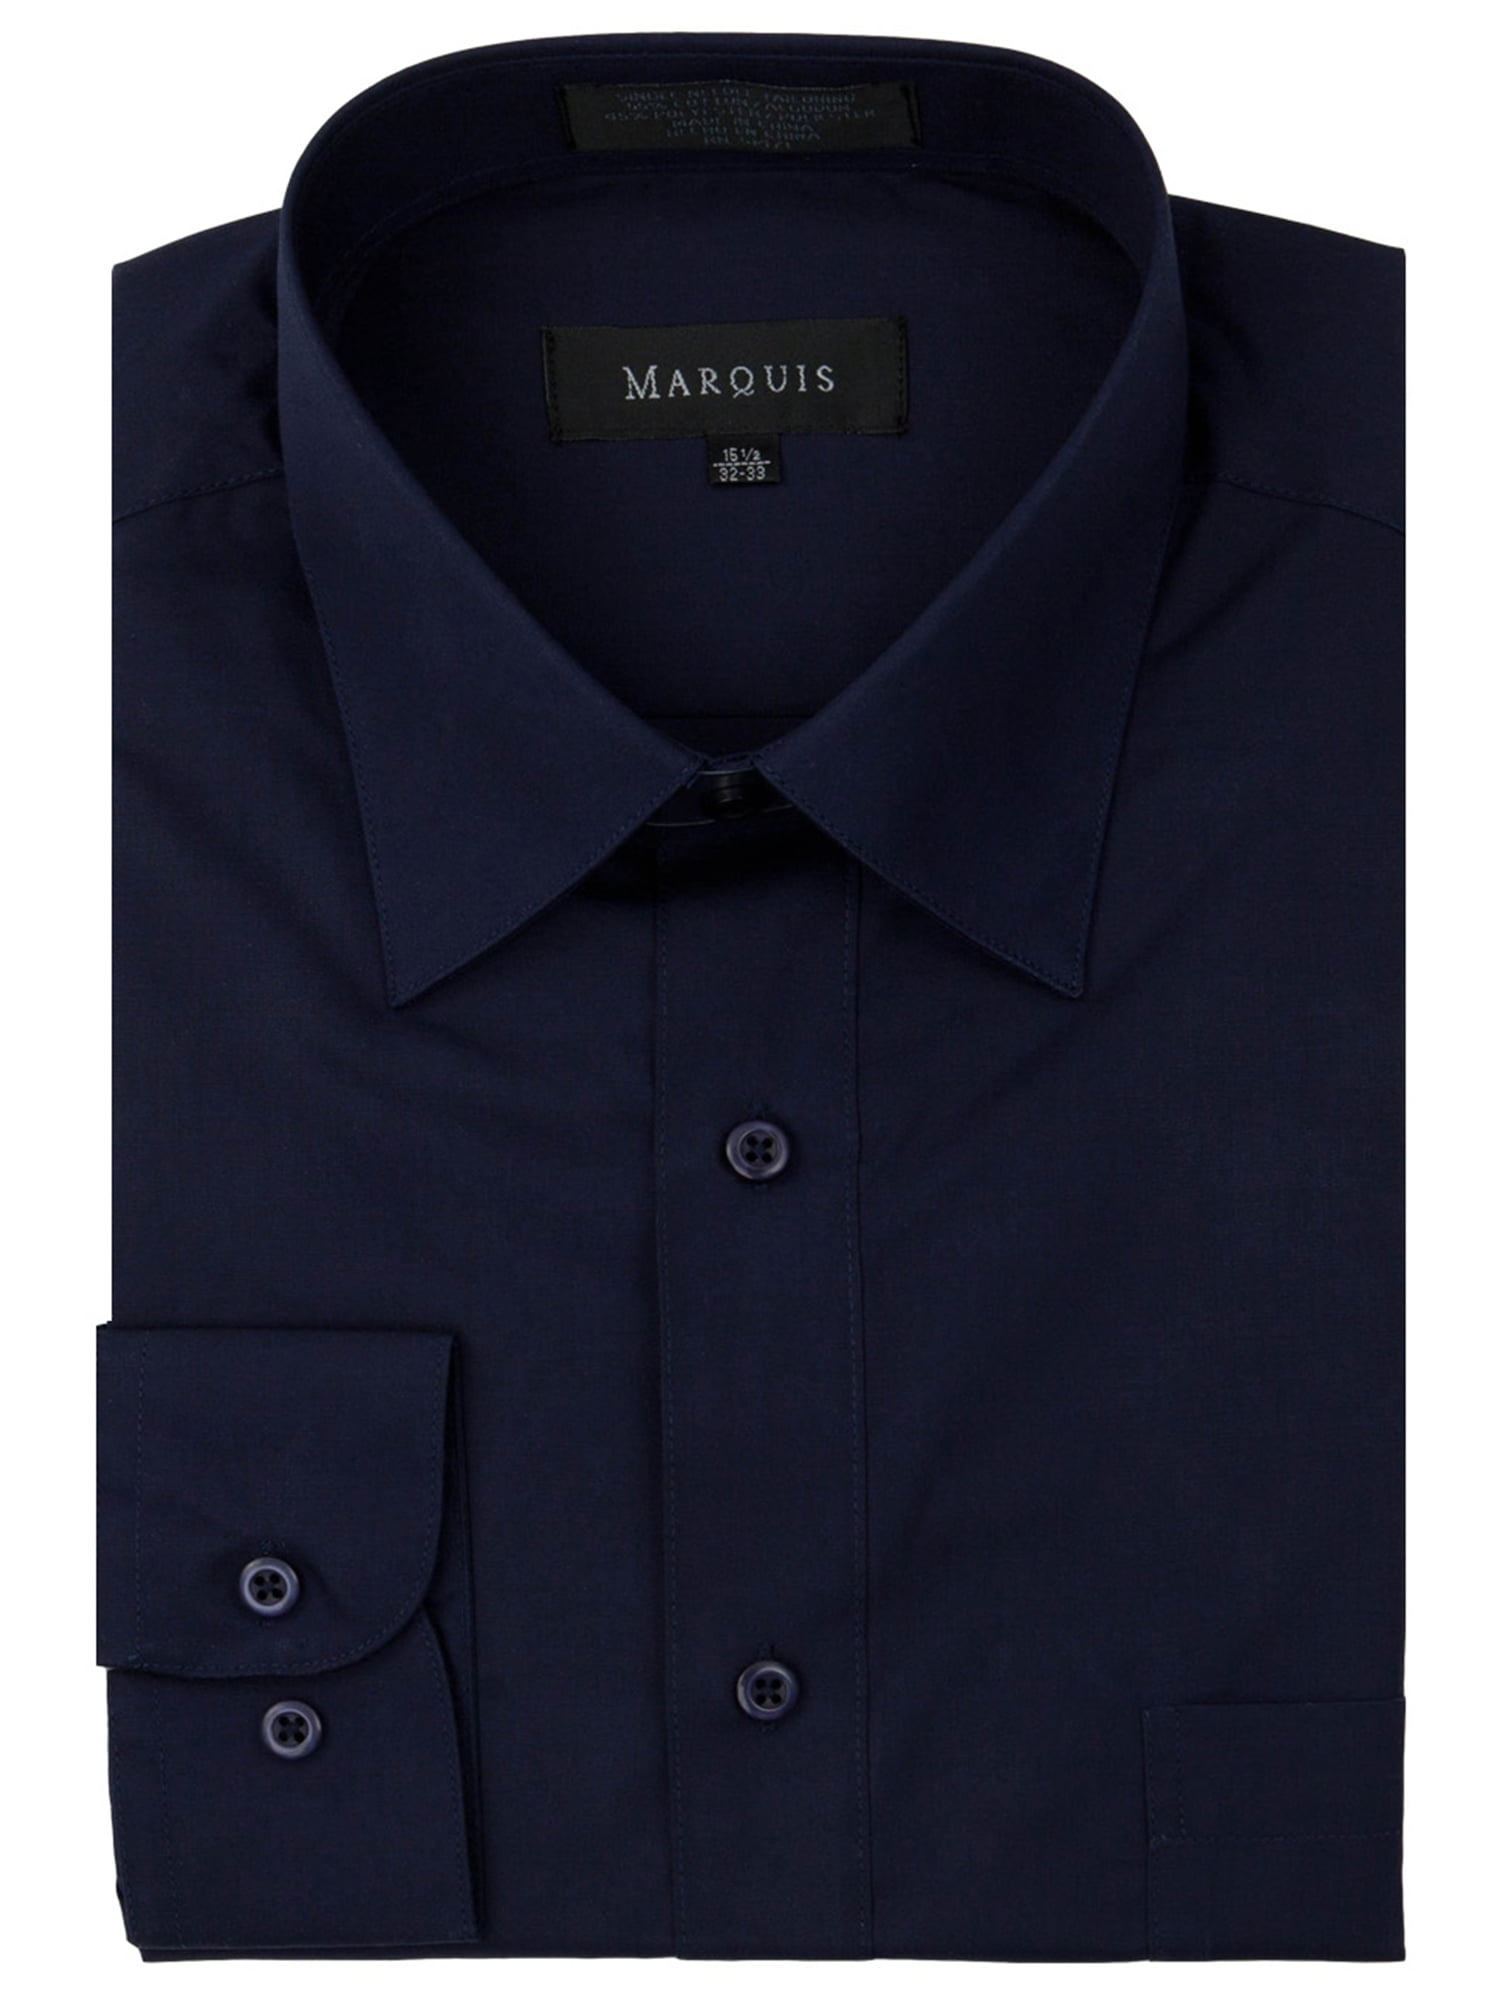 Marquis - Marquis Men's Long Sleeve Regular Fit Dress Shirt - Walmart ...